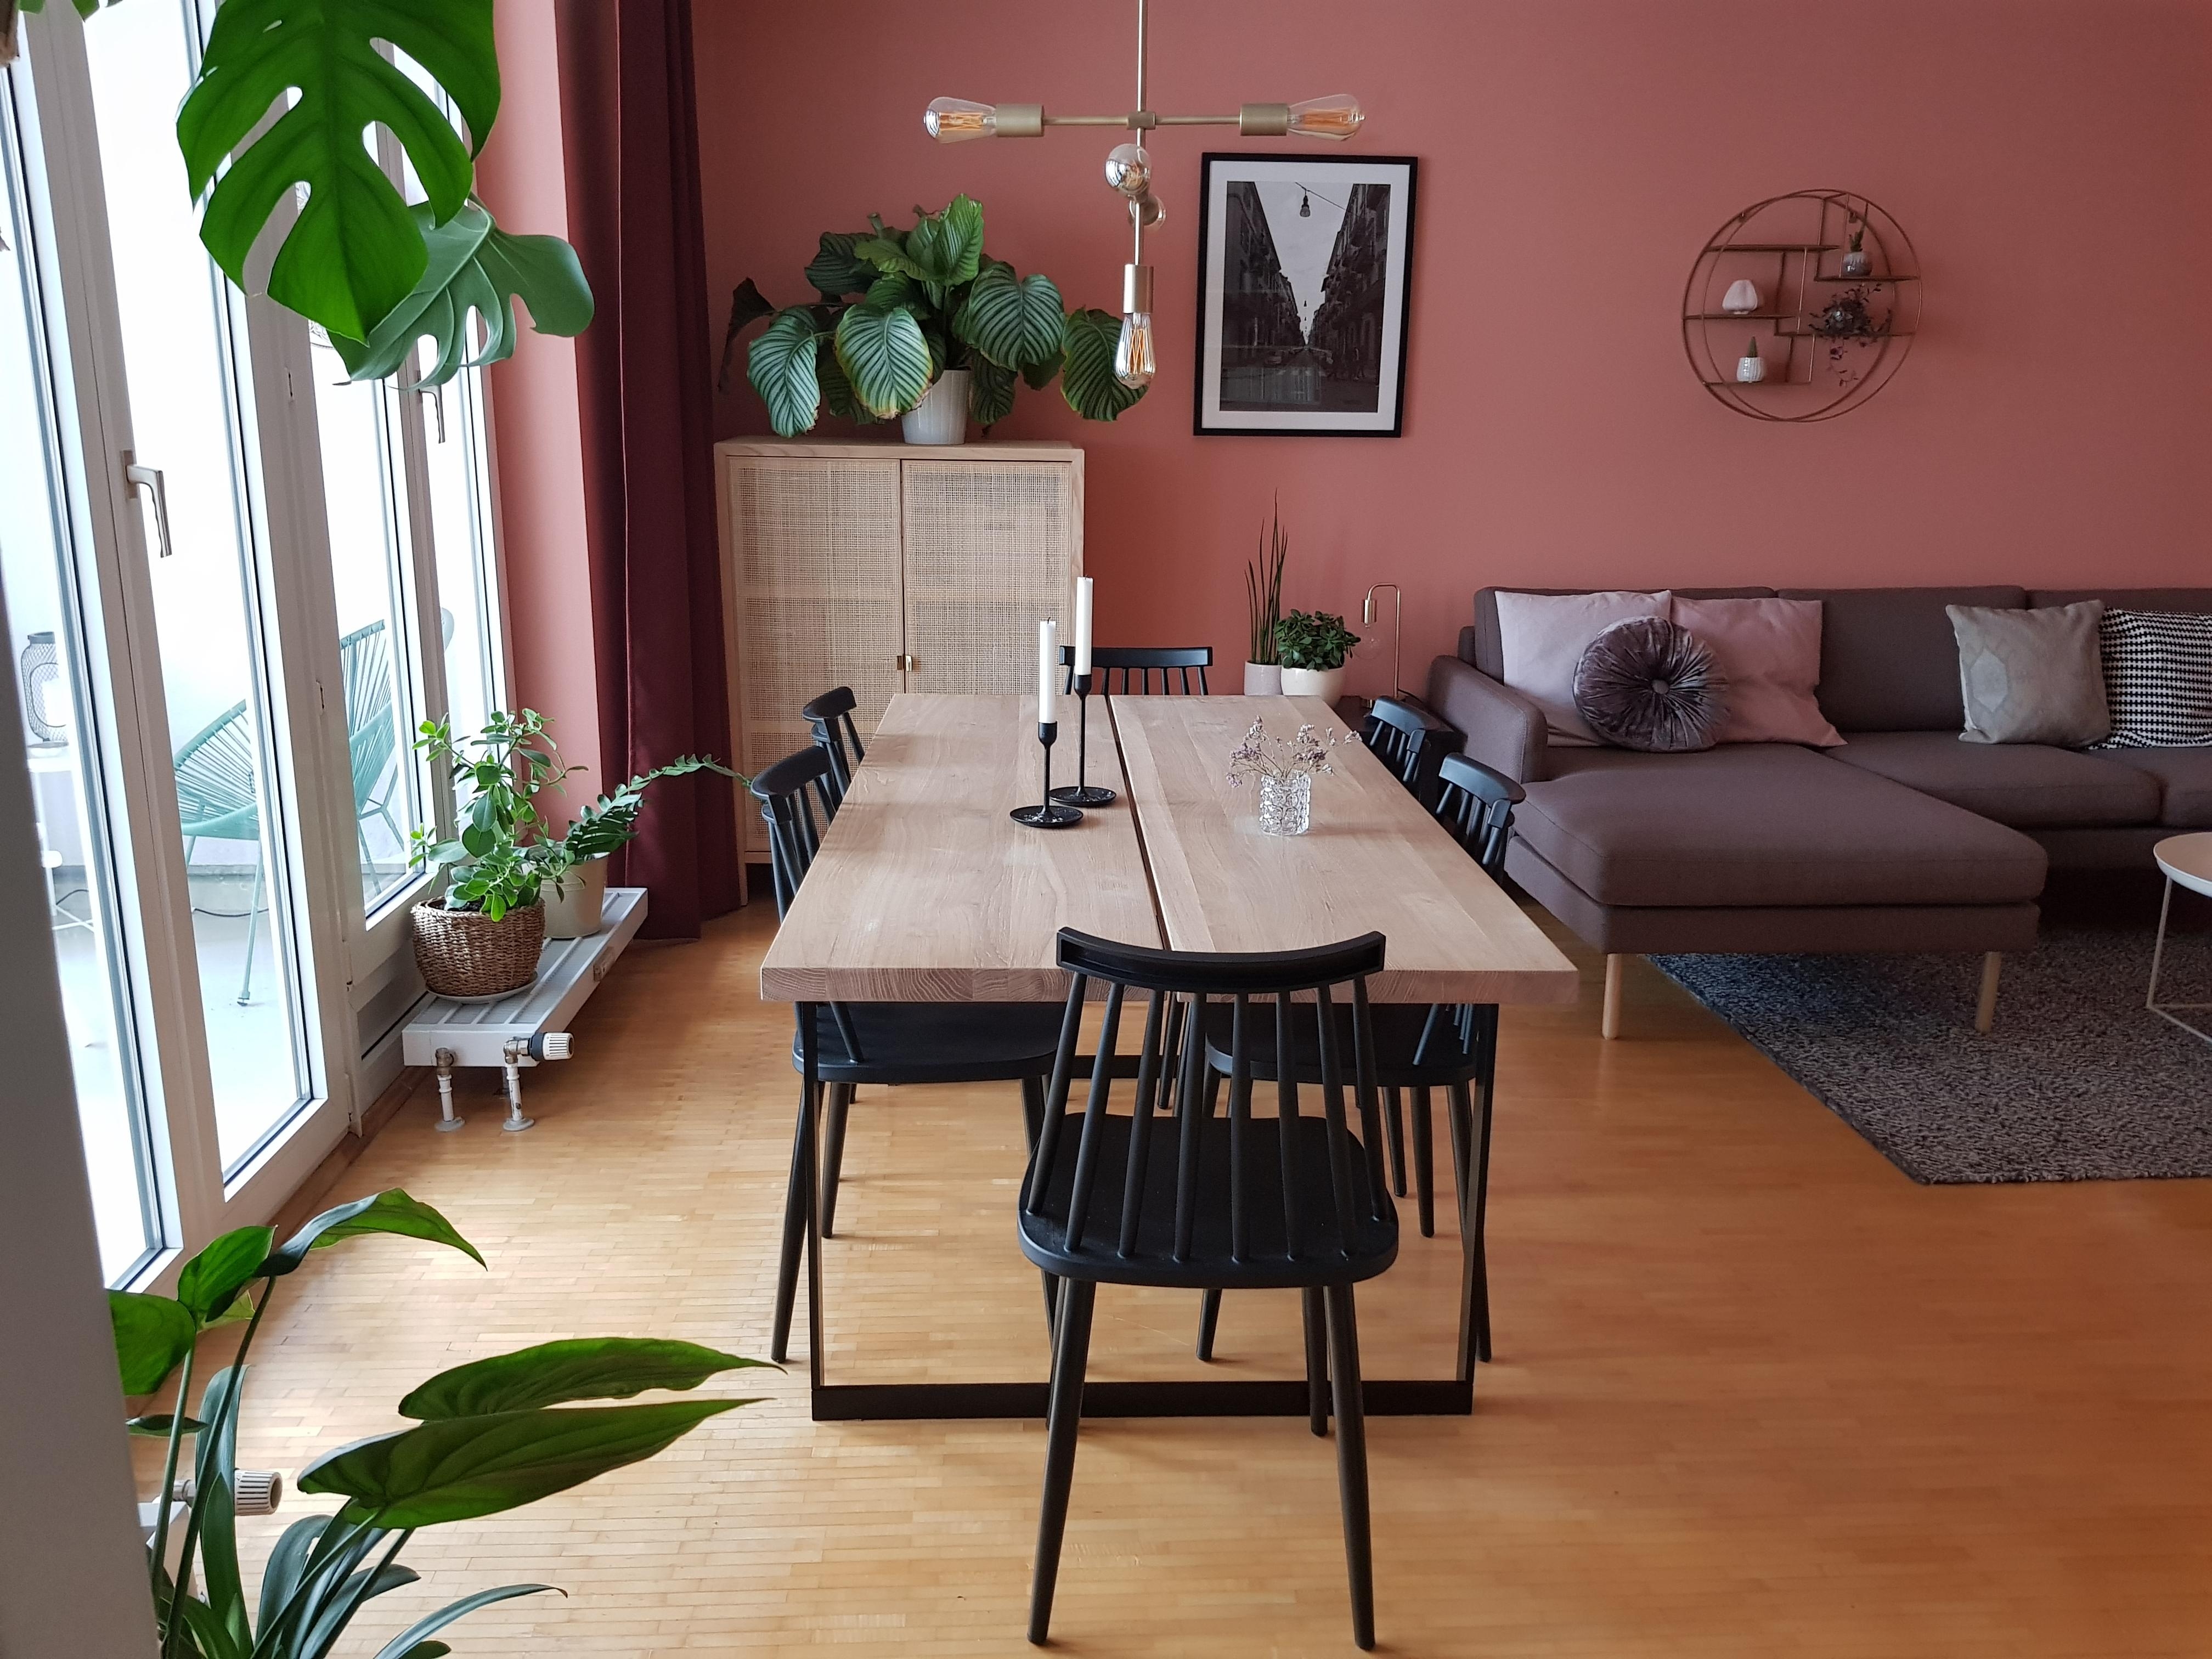 Das #wohnzimmer passt ganz gut zum Thema #plantlover der #livingchallenge || #monstera #calathea #wandfarbe #rosa 